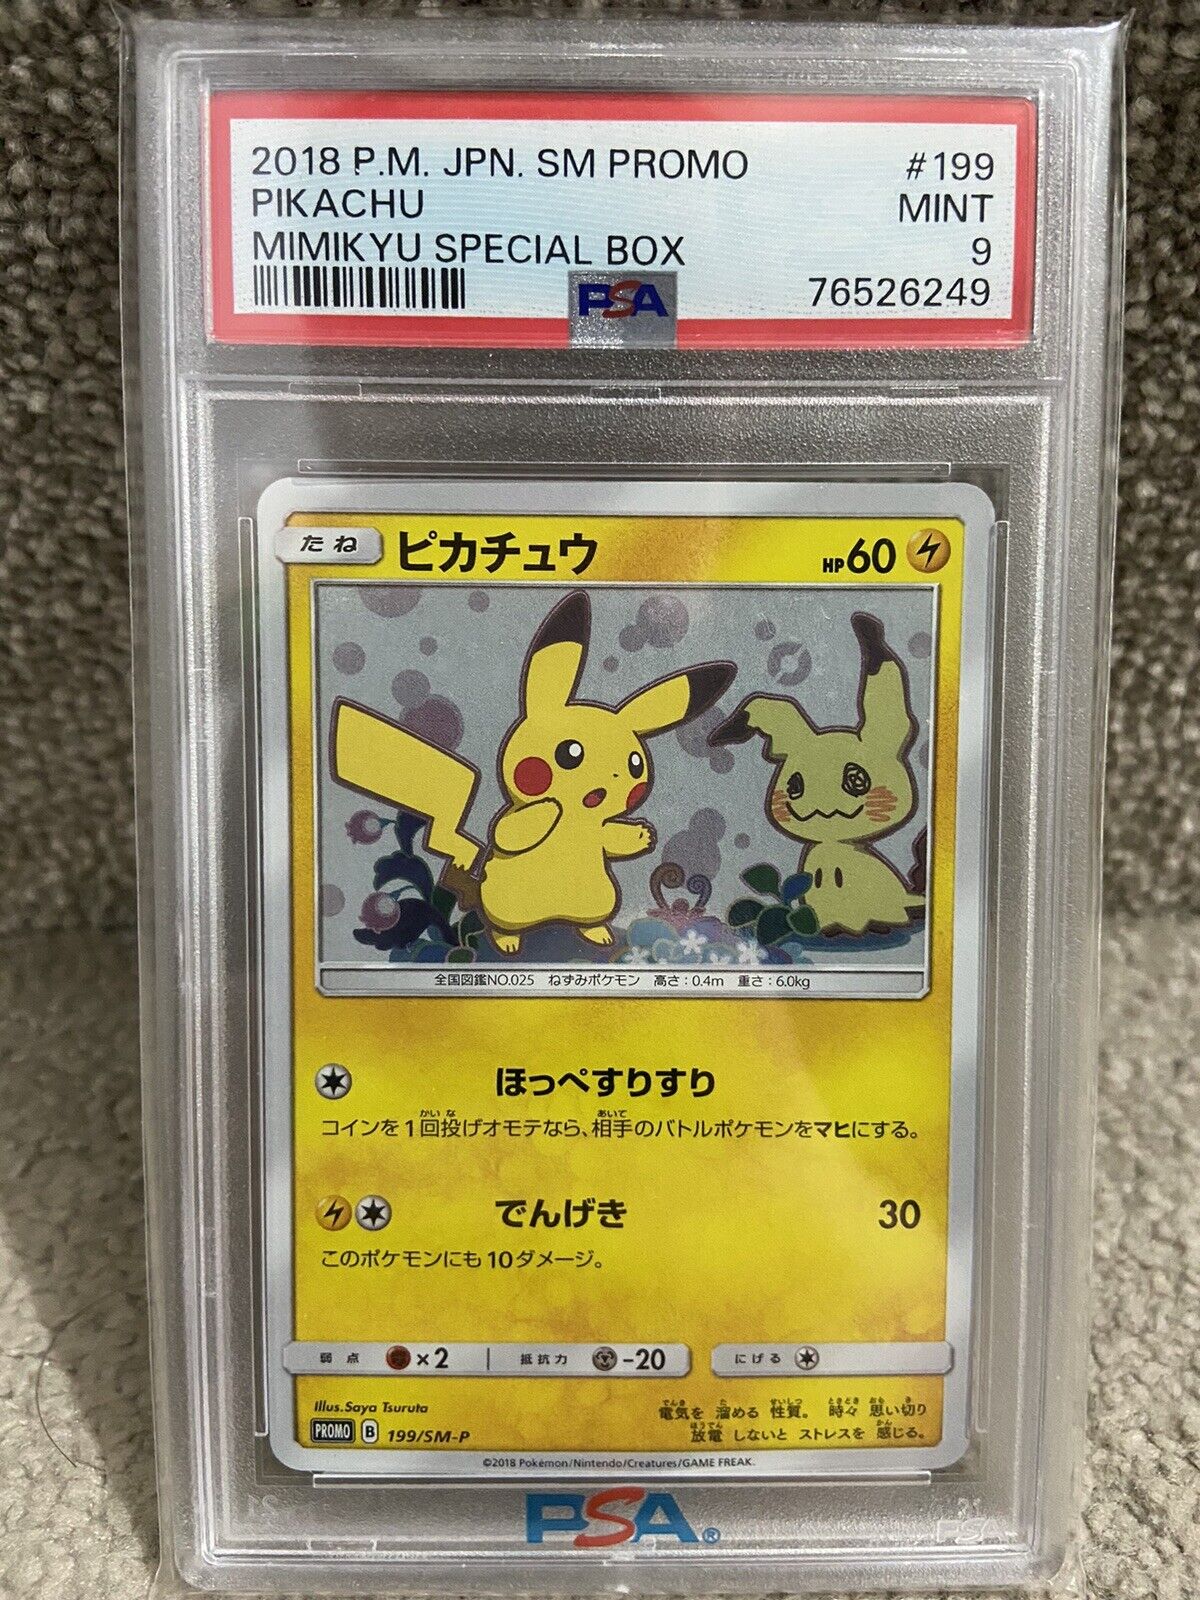 PSA 9 Pikachu Mimikyu Special Box Promo 199/SM-P Japanese Pokemon Card Game